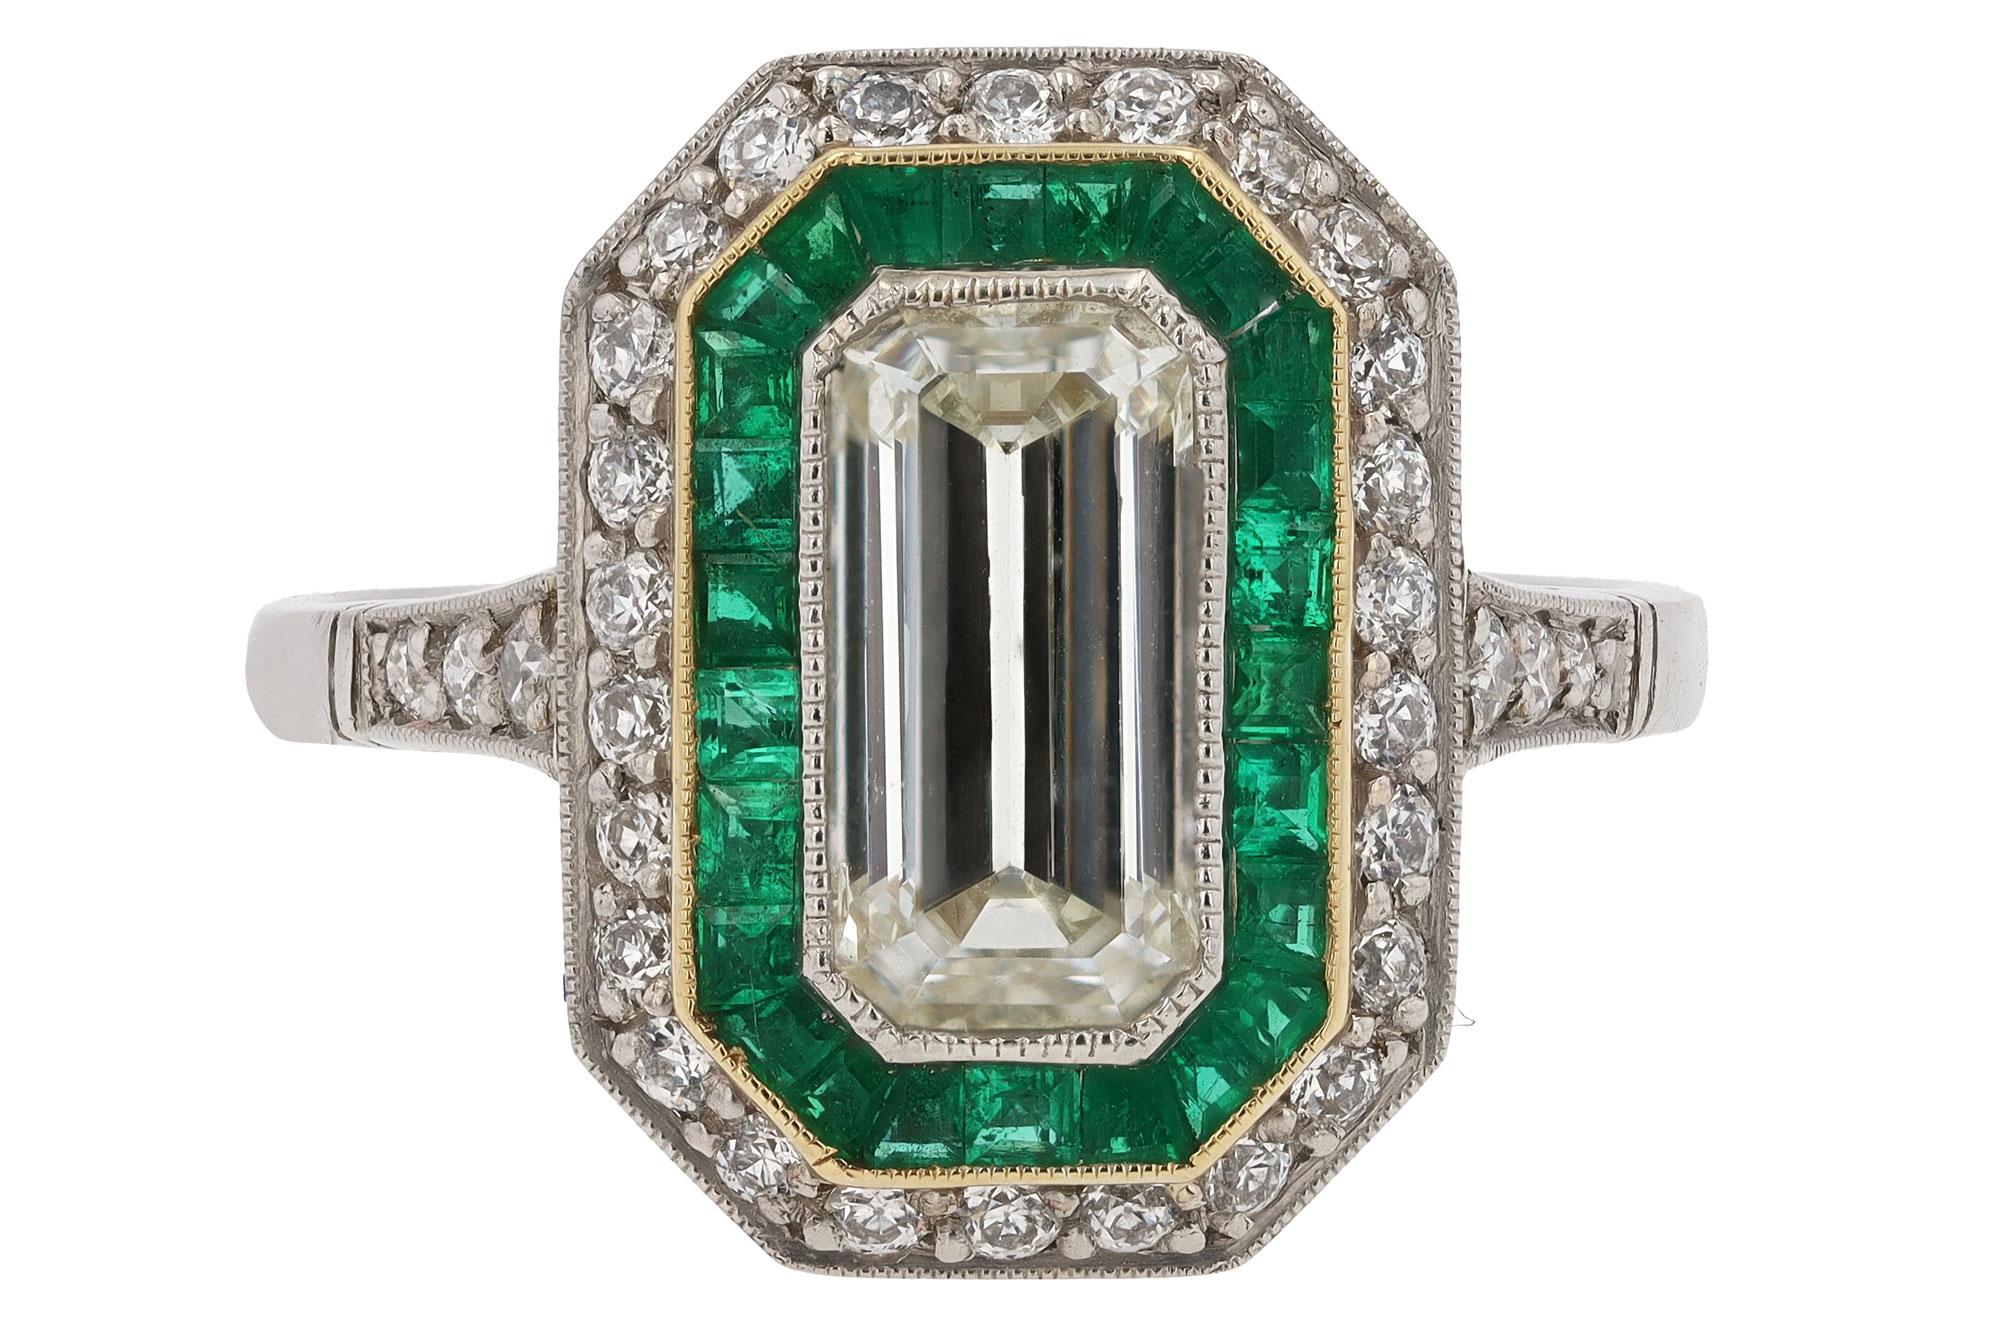 Ein bezaubernder Verlobungsring mit Diamanten im Smaragdschliff im Art Deco-Stil. Die schlanken, geometrischen Linien der achteckigen Form erinnern an die Architektur des Jazz-Zeitalters und werden durch einen Heiligenschein aus grünen Smaragden im